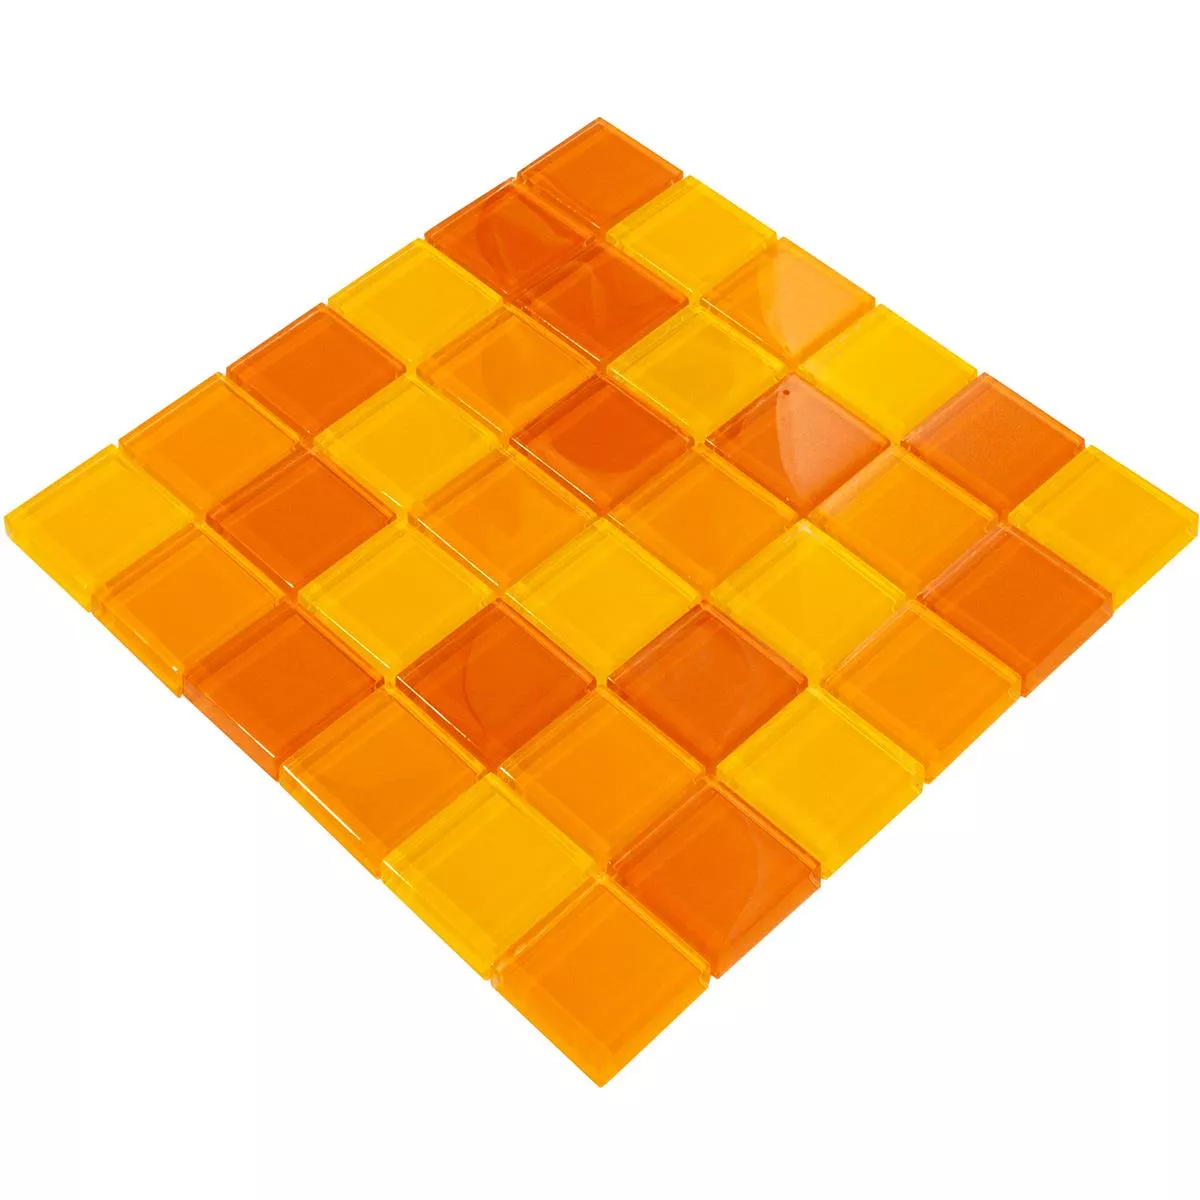 Glass Mosaic Tiles Glasgow Orange Mix